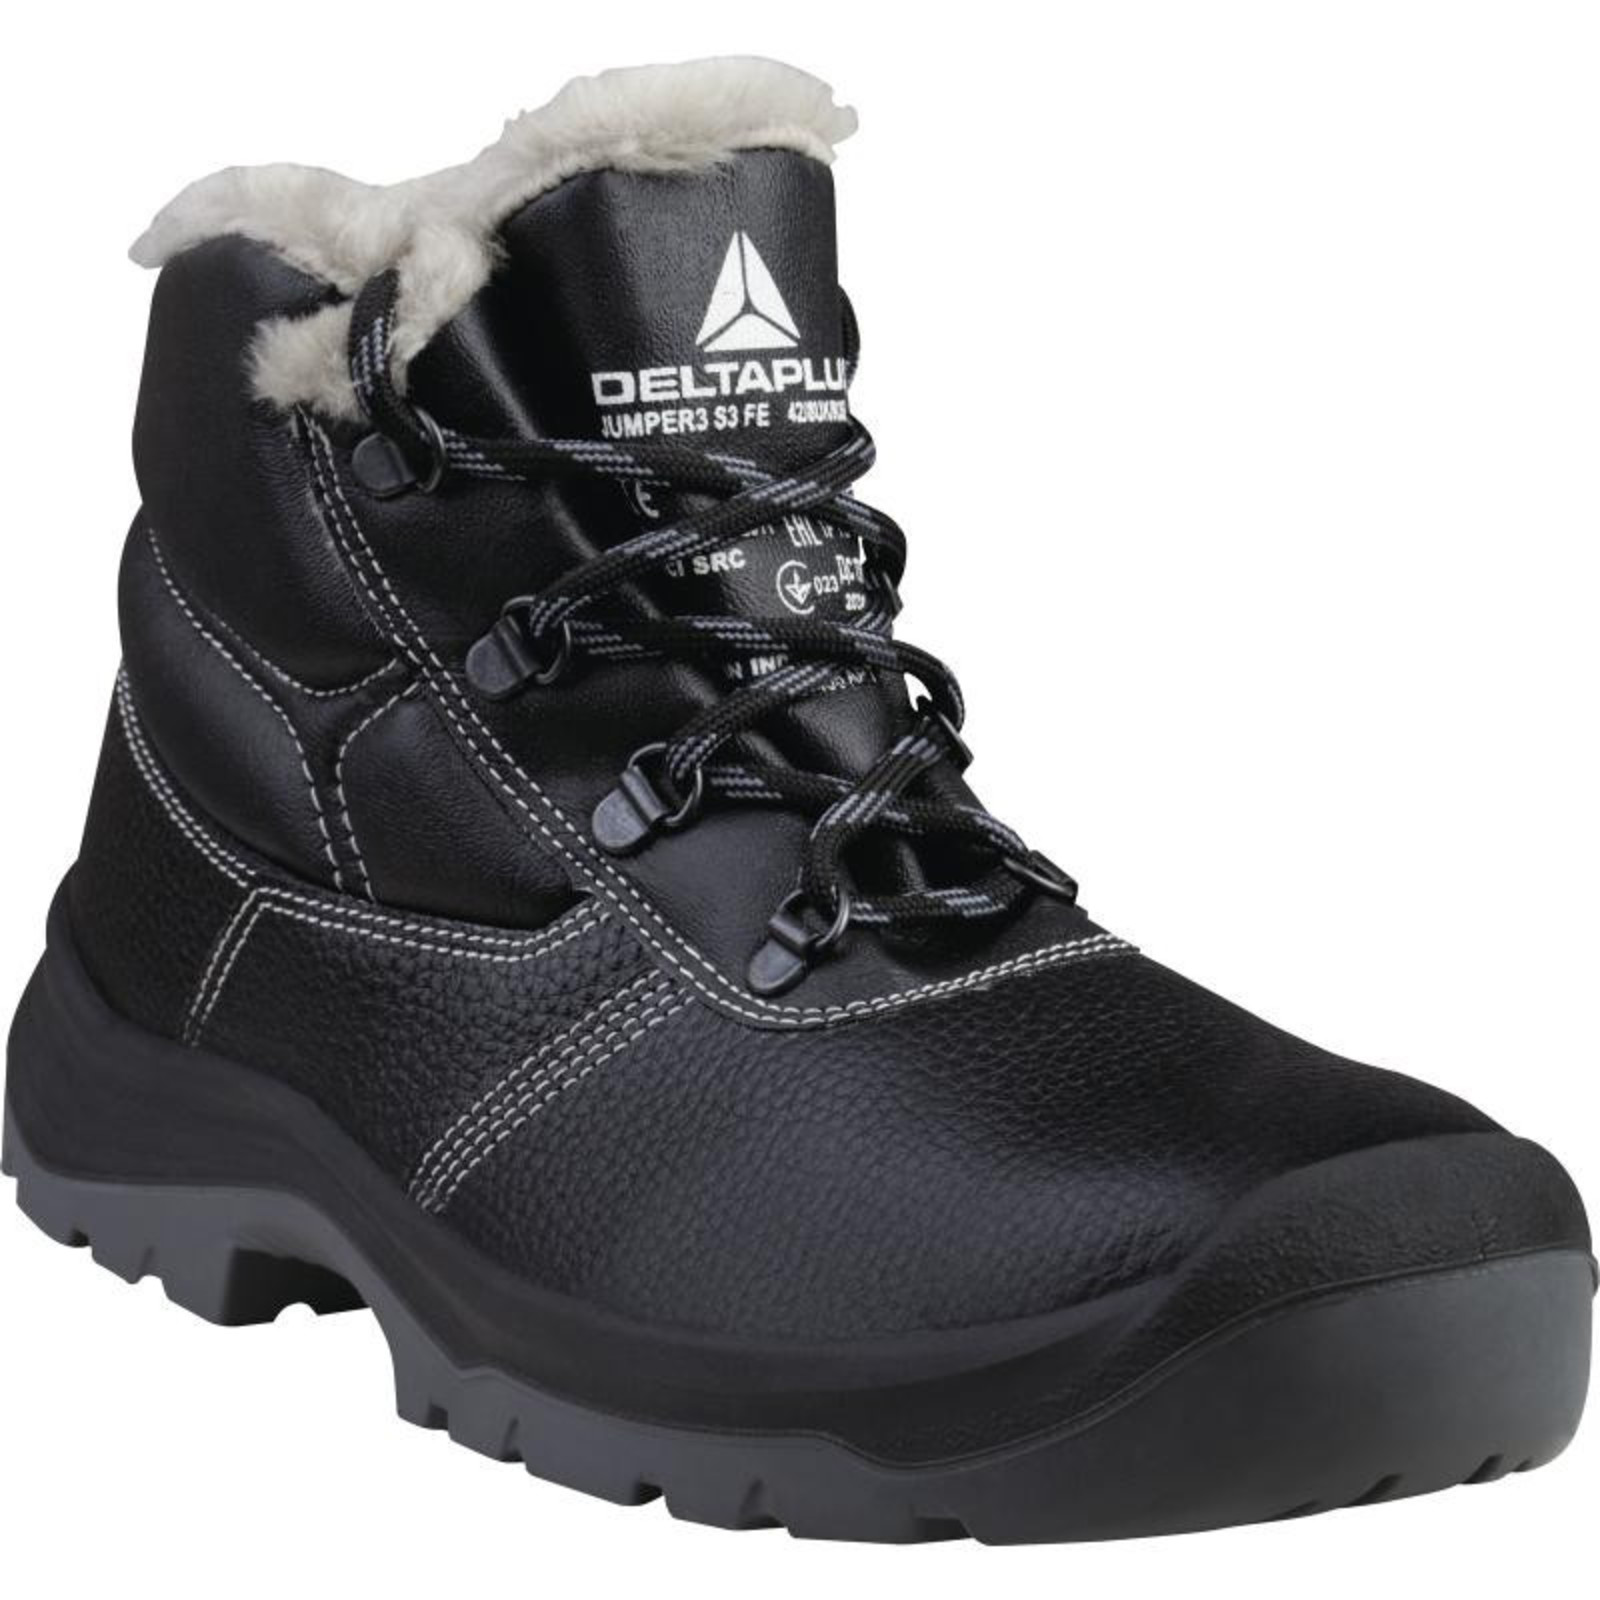 Zimná členková bezpečnostná obuv Delta Plus Jumper3 S3 - veľkosť: 45, farba: čierna